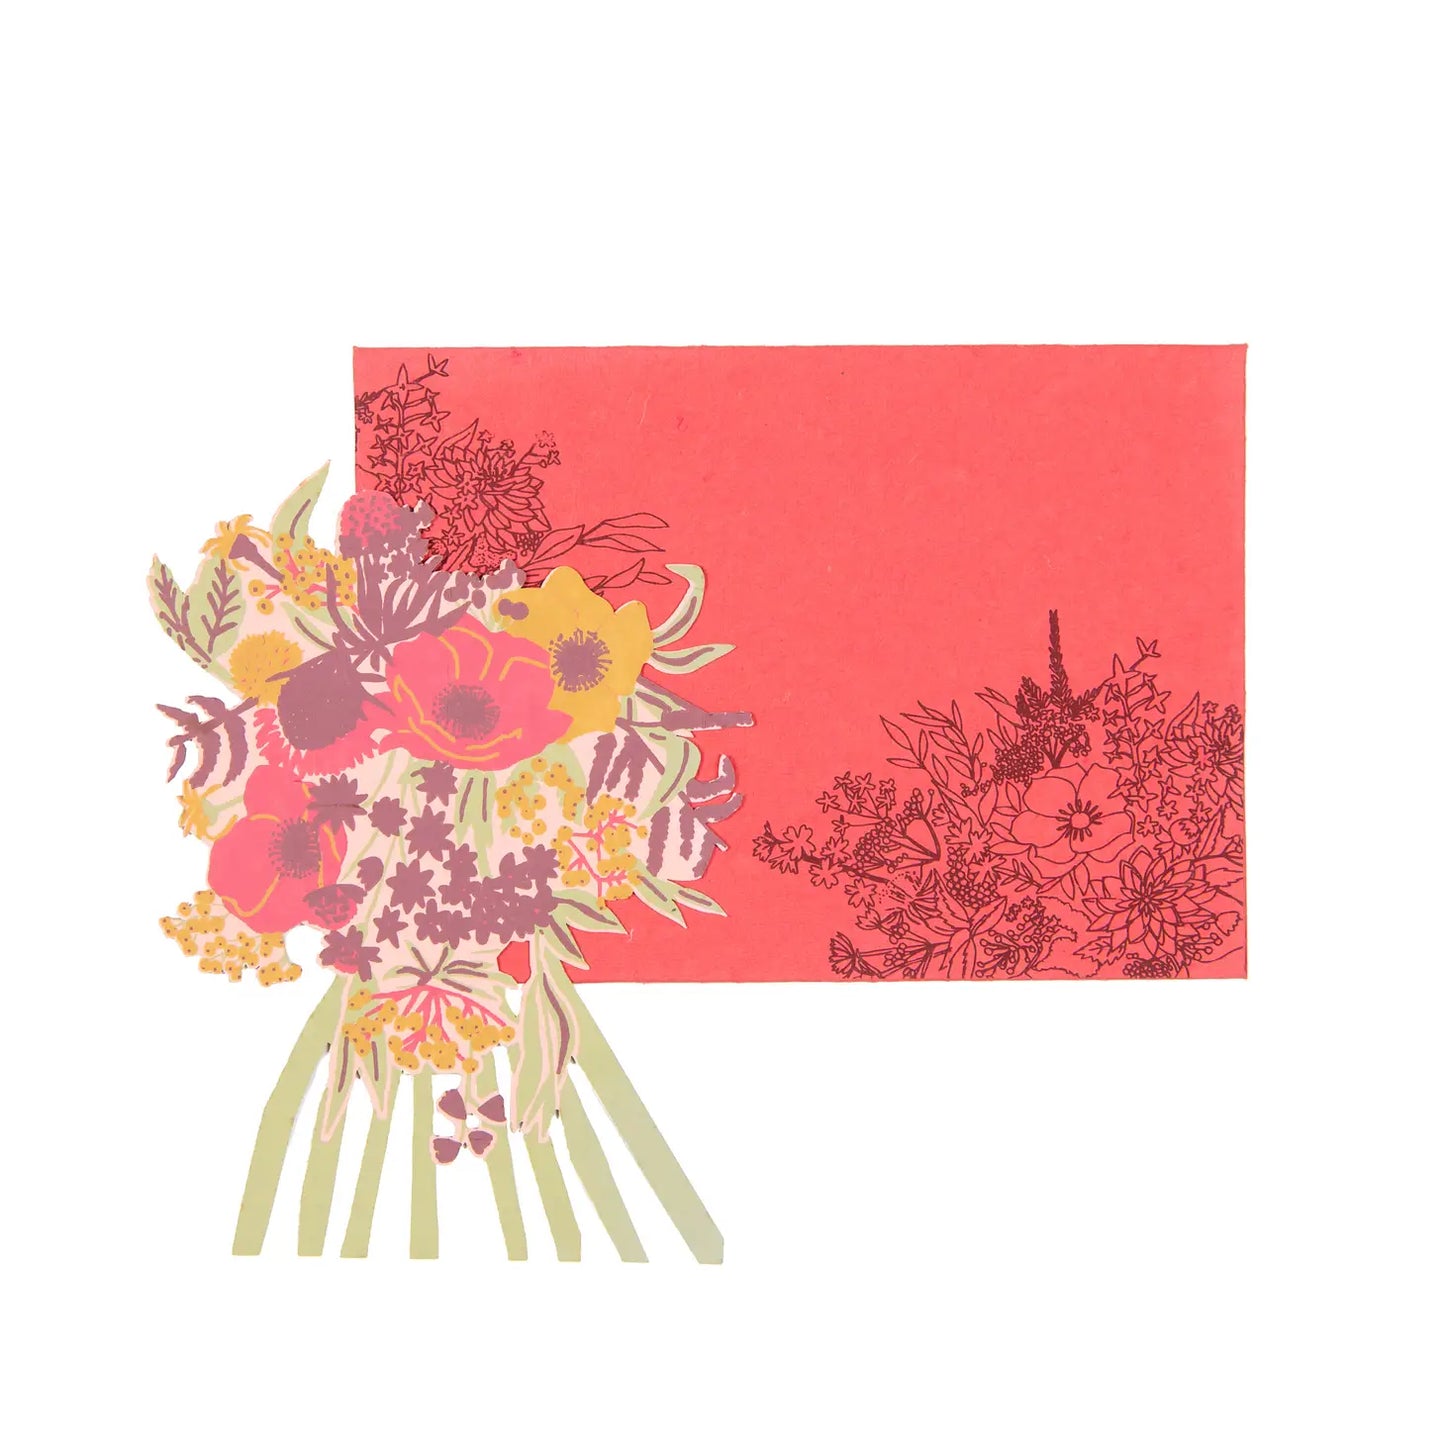 Peonie Pink Bouquet card - THE BRISTOL ARTISAN